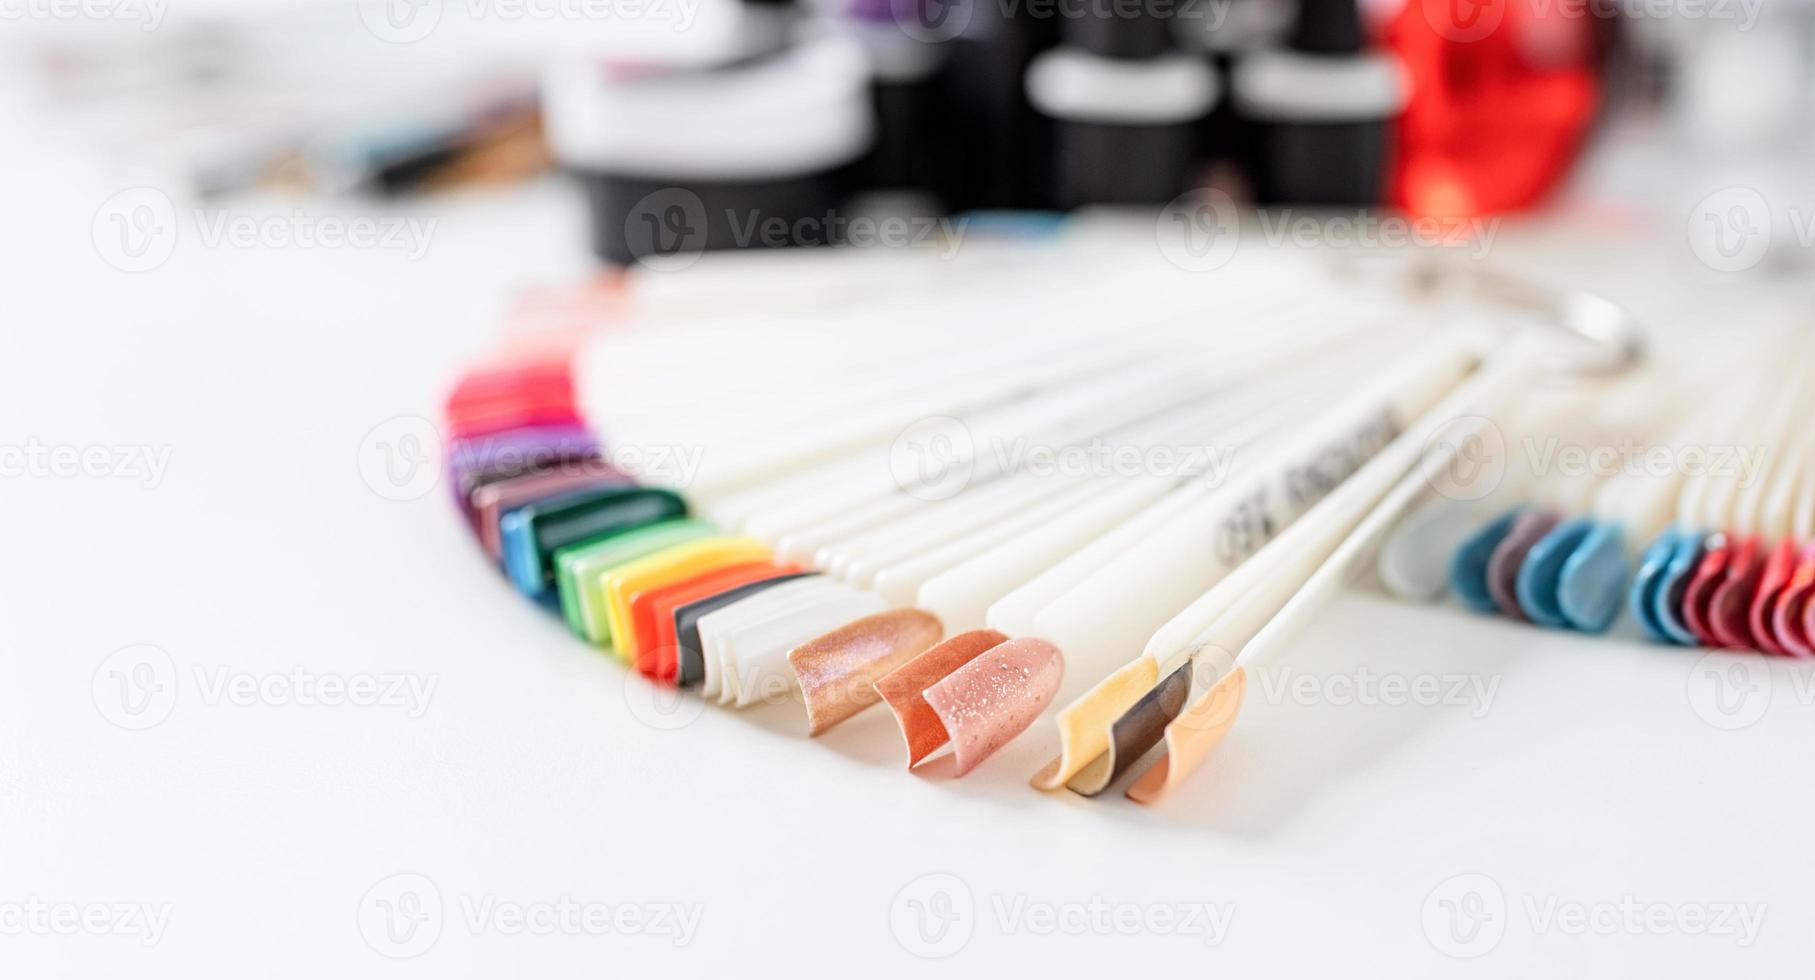 pontas de unhas de plástico coloridas em cima da mesa no salão de manicure foto